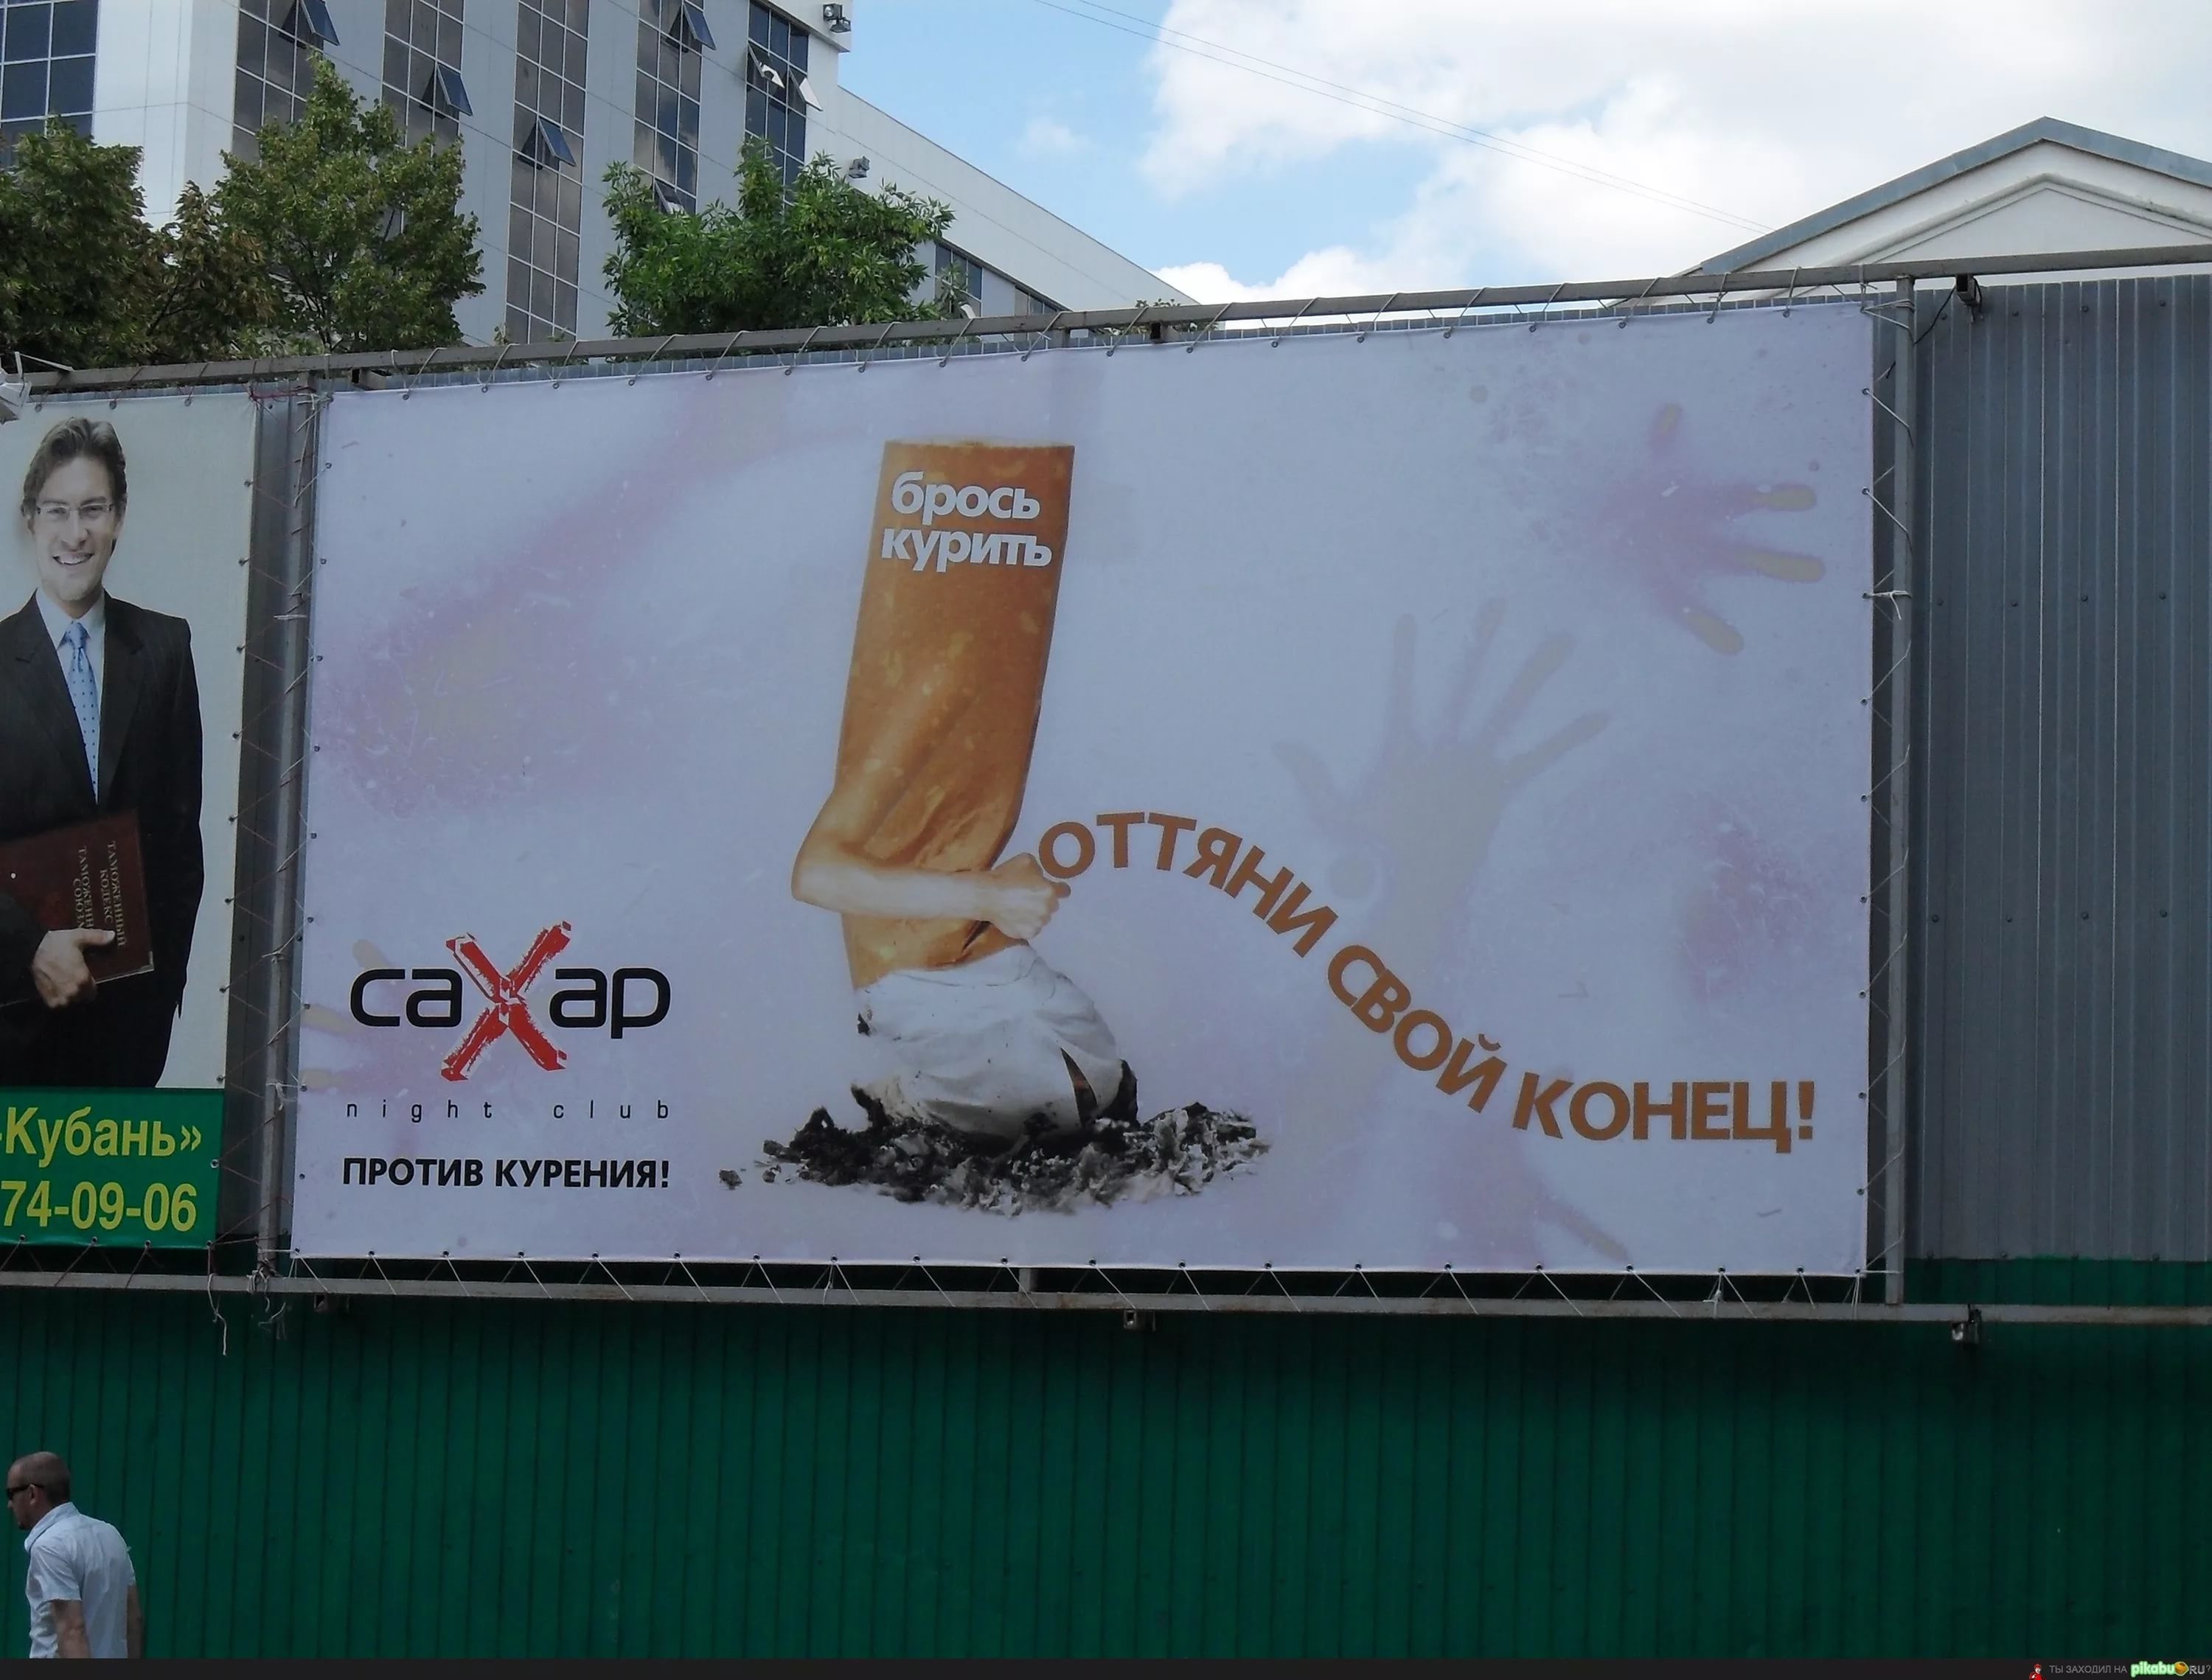 Вся реклама россии